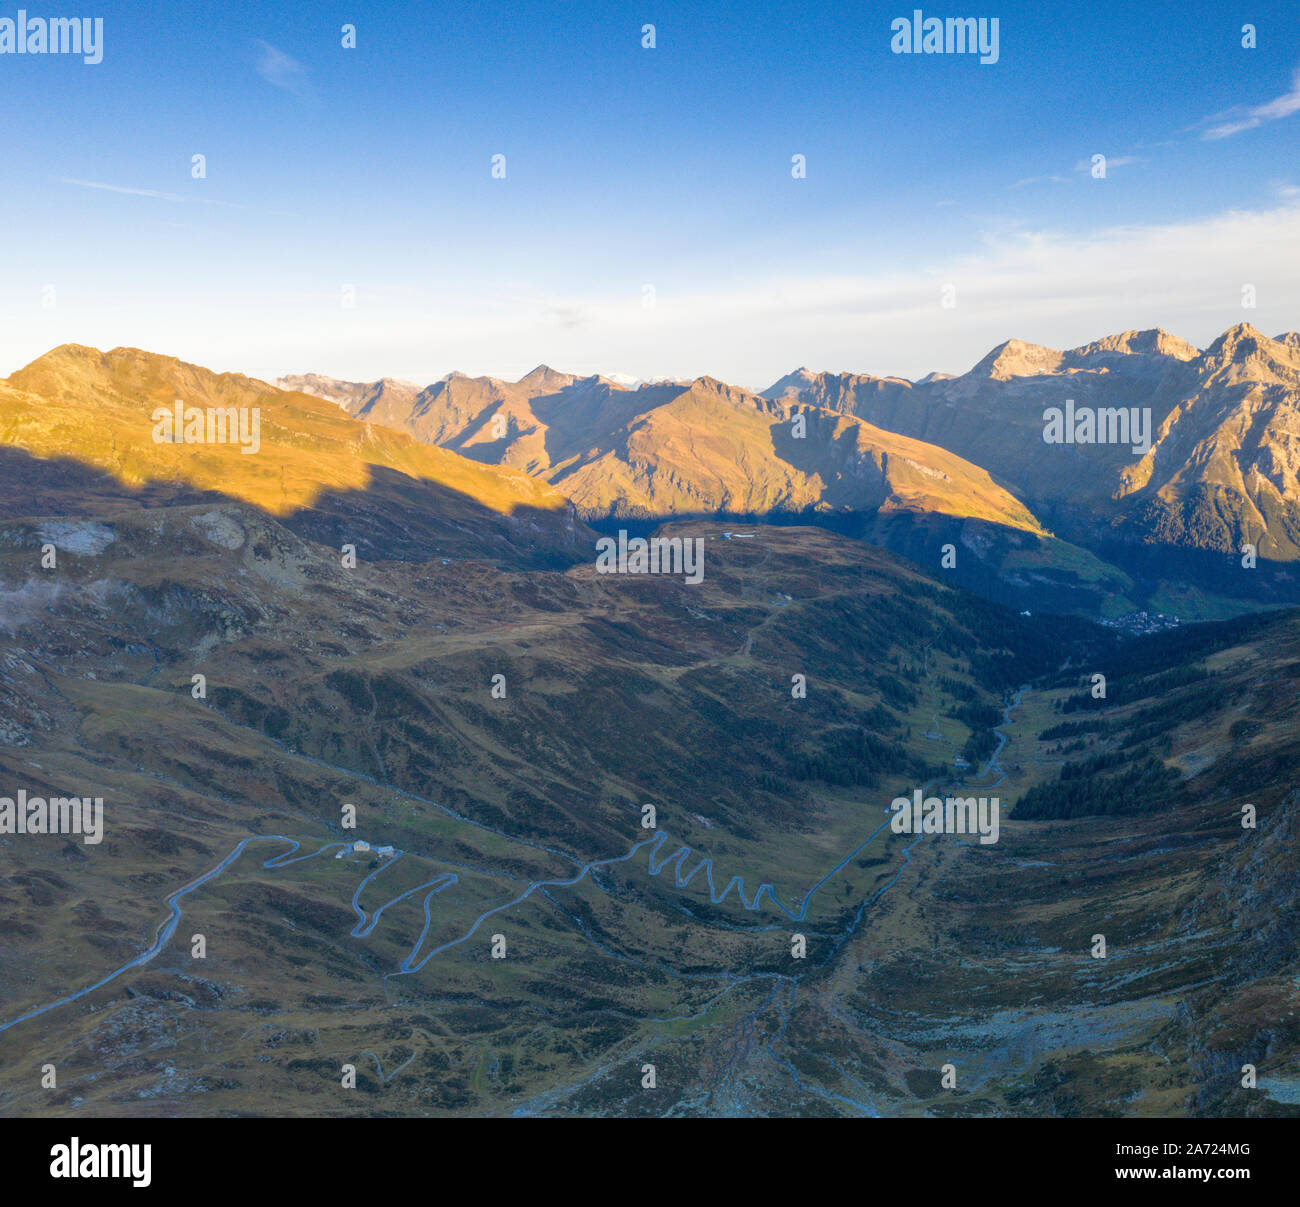 Luftaufnahme von haarnadelkurven von Sunrise Mountain Road in Richtung Splugen, Kanton Graubünden, Schweiz Stockfoto